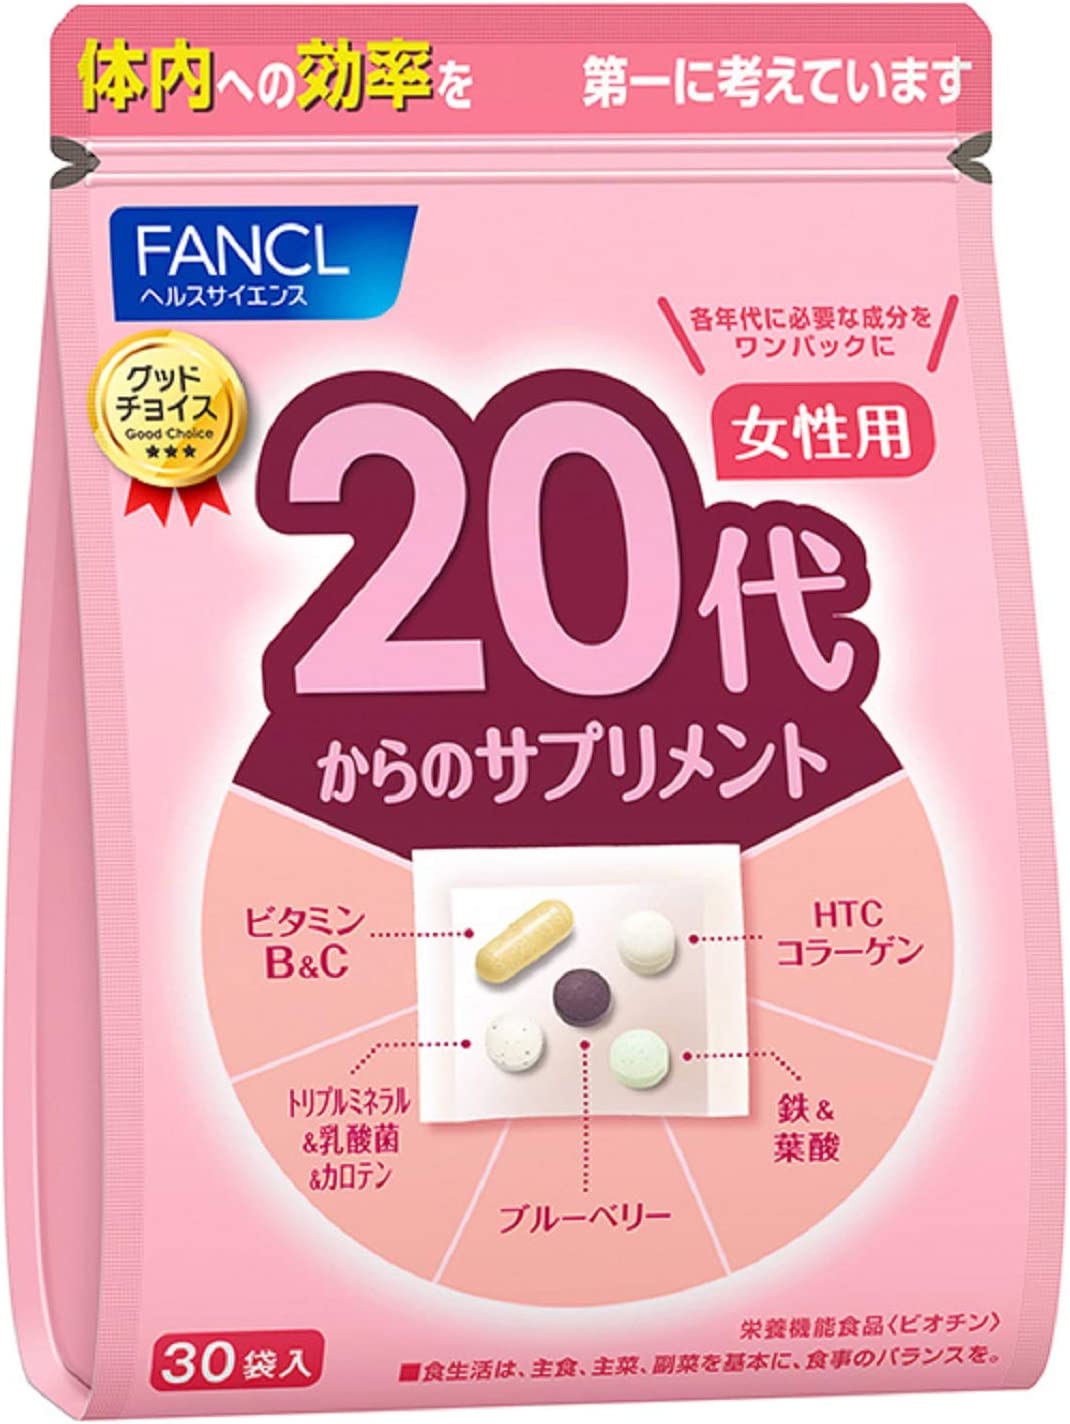 Комплекс витаминов FANCL для женщин старше 20 лет витаминный комплекс для поддержки естественной красоты skin nails